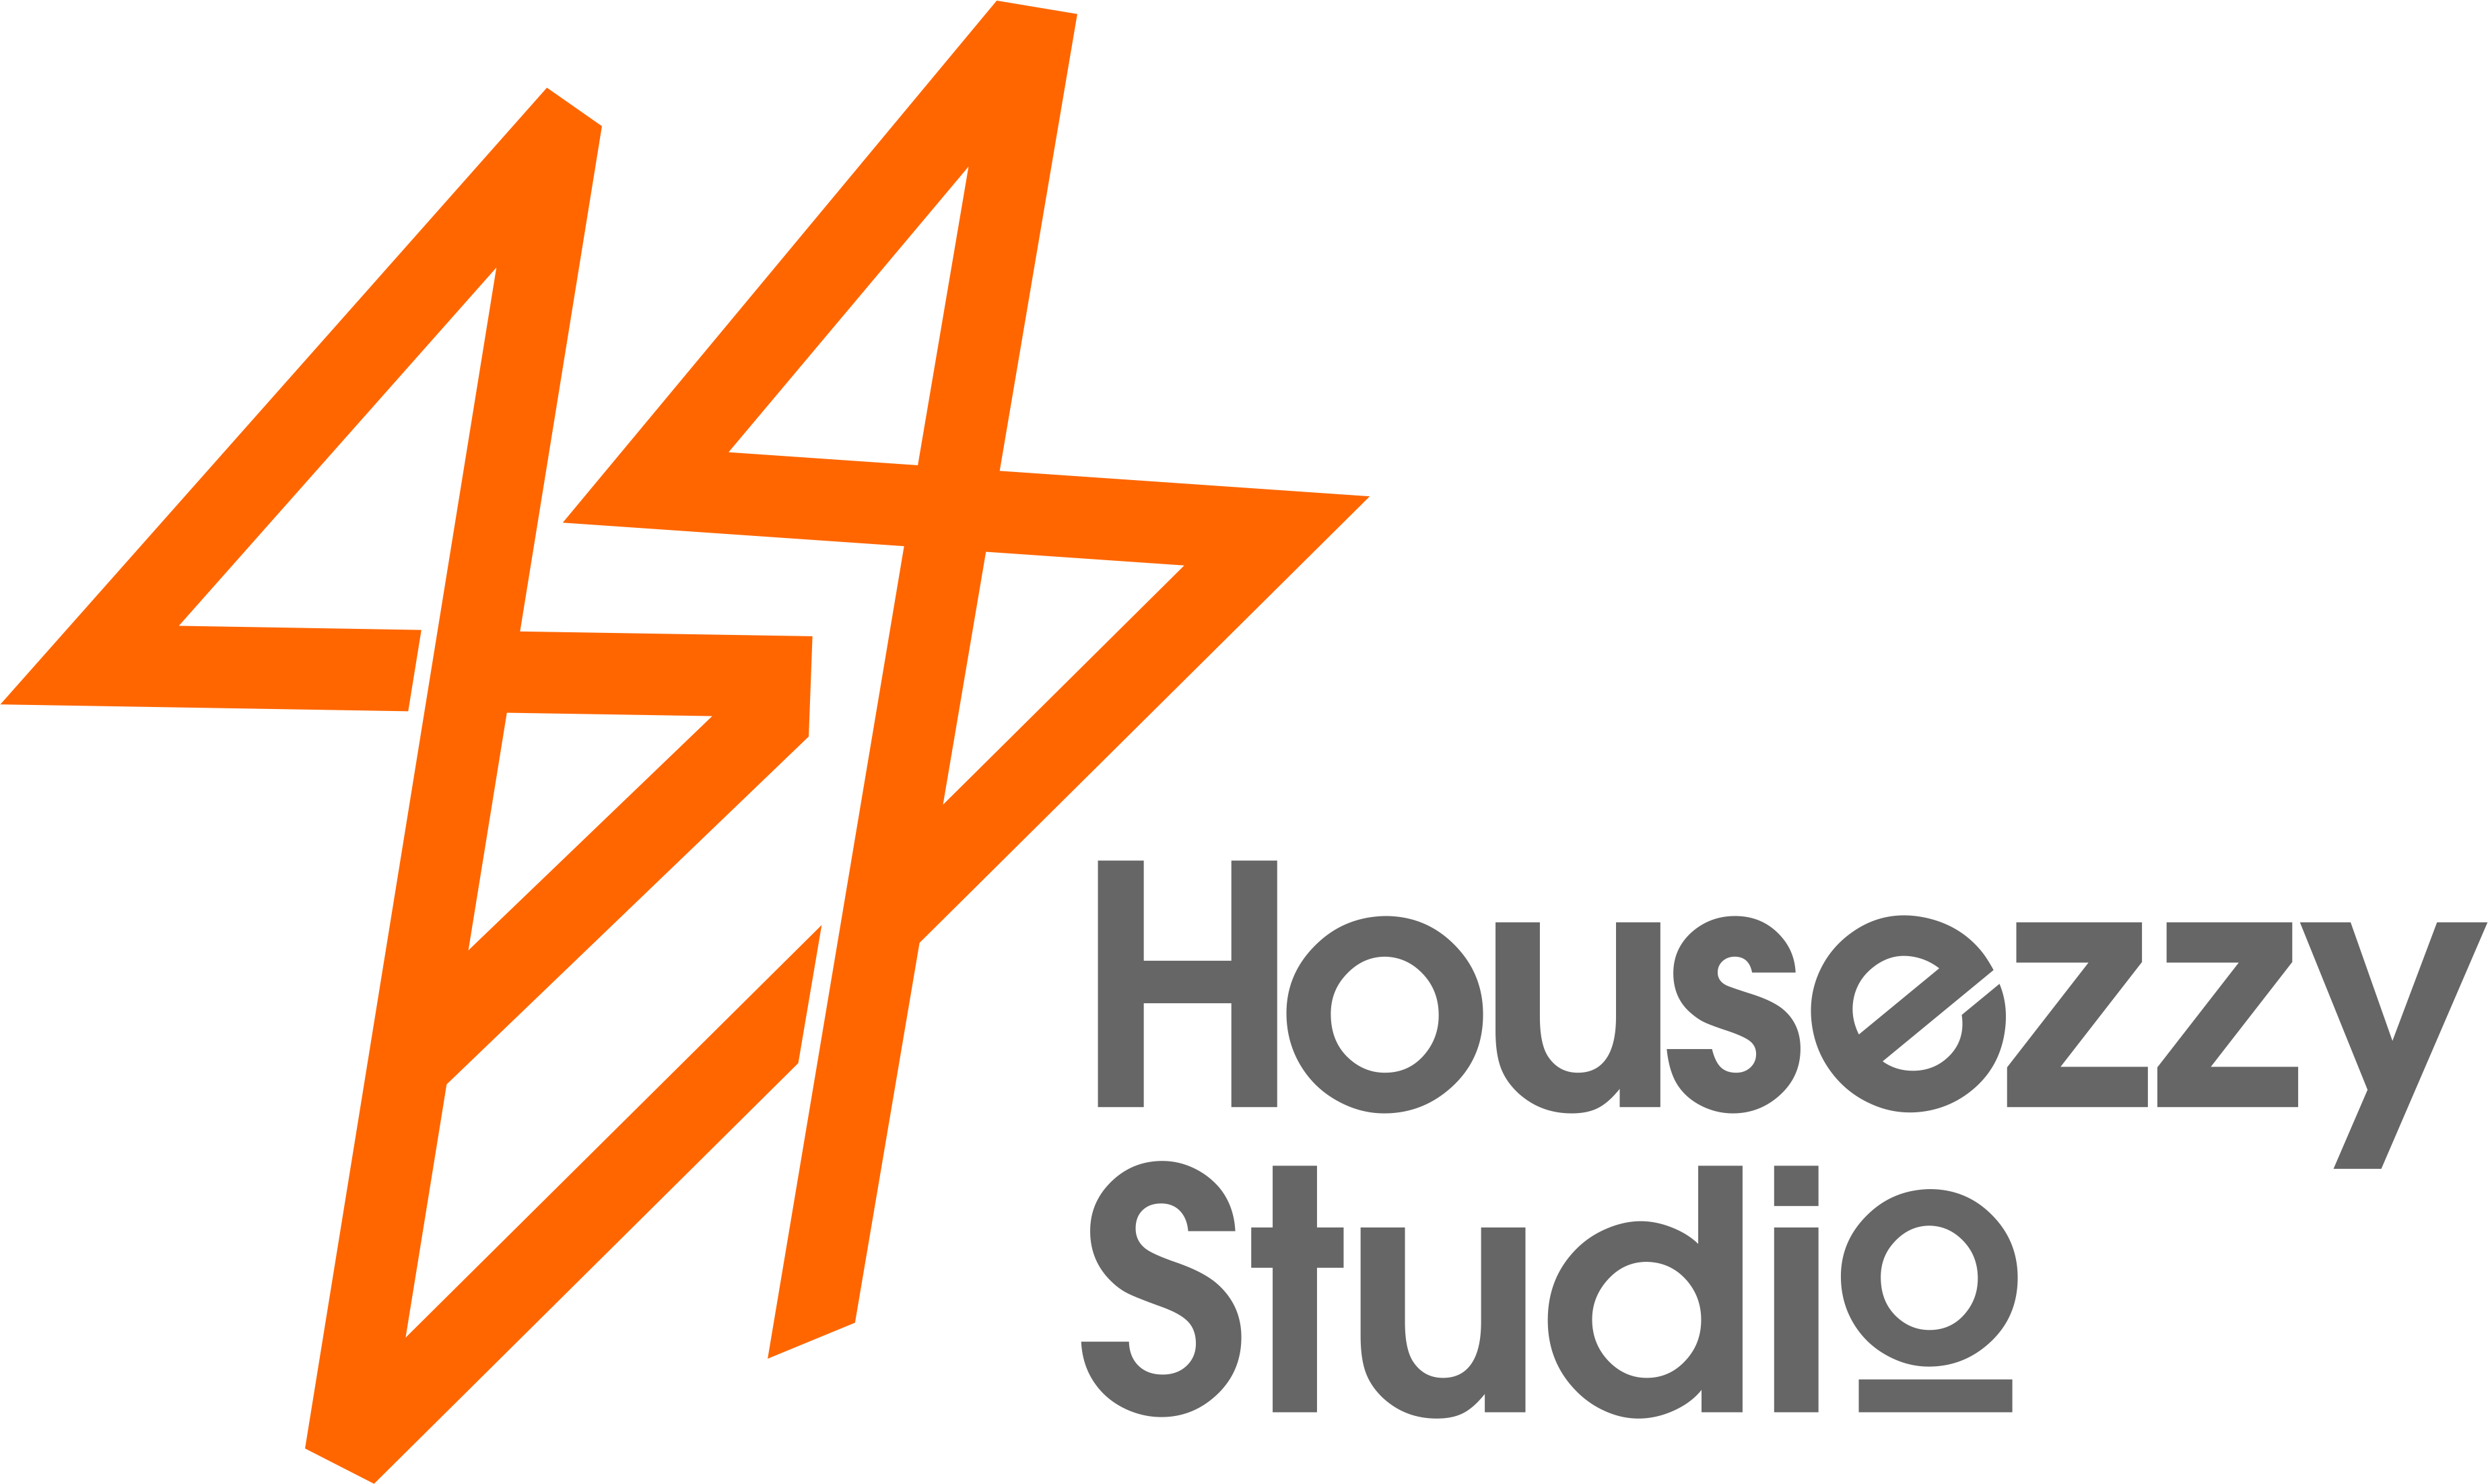 Housezzy Studio